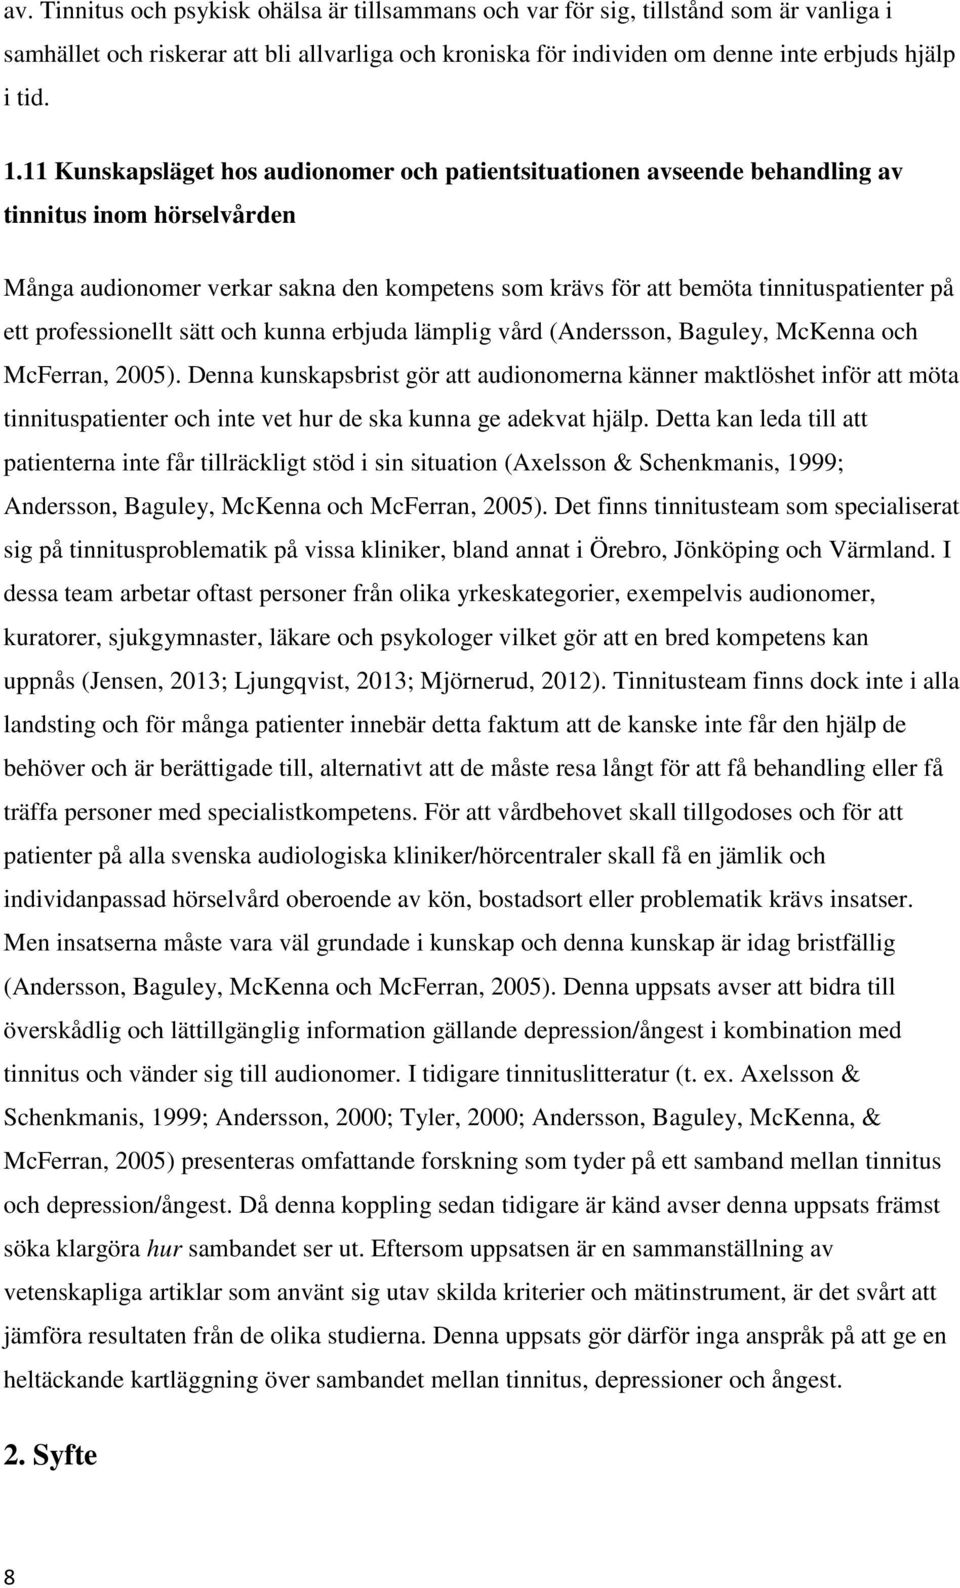 professionellt sätt och kunna erbjuda lämplig vård (Andersson, Baguley, McKenna och McFerran, 2005).